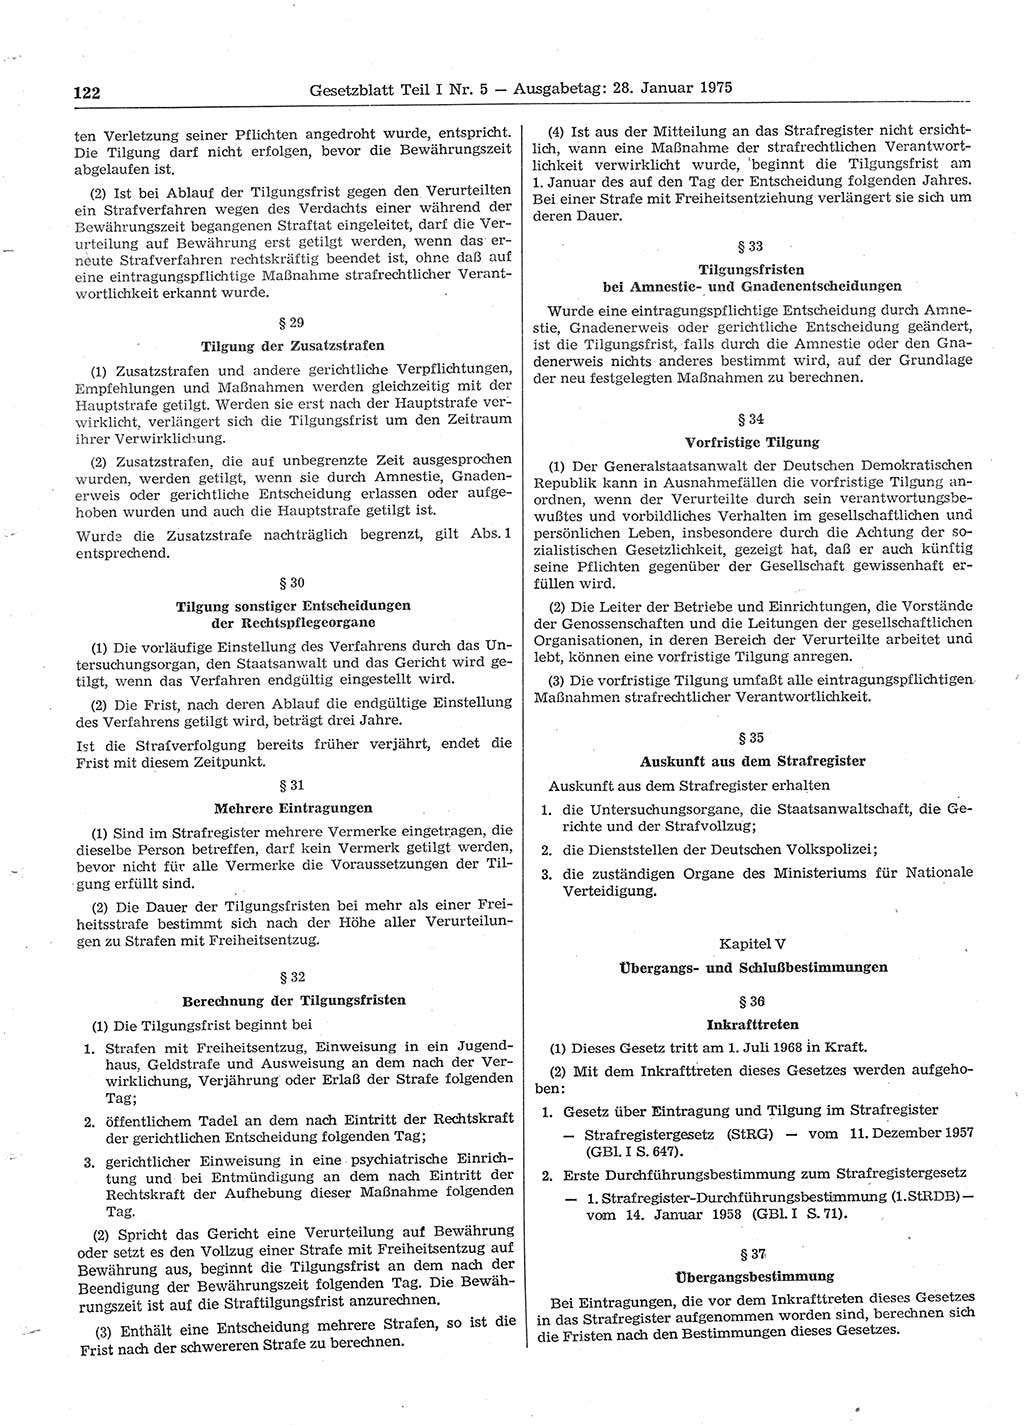 Gesetzblatt (GBl.) der Deutschen Demokratischen Republik (DDR) Teil Ⅰ 1975, Seite 122 (GBl. DDR Ⅰ 1975, S. 122)